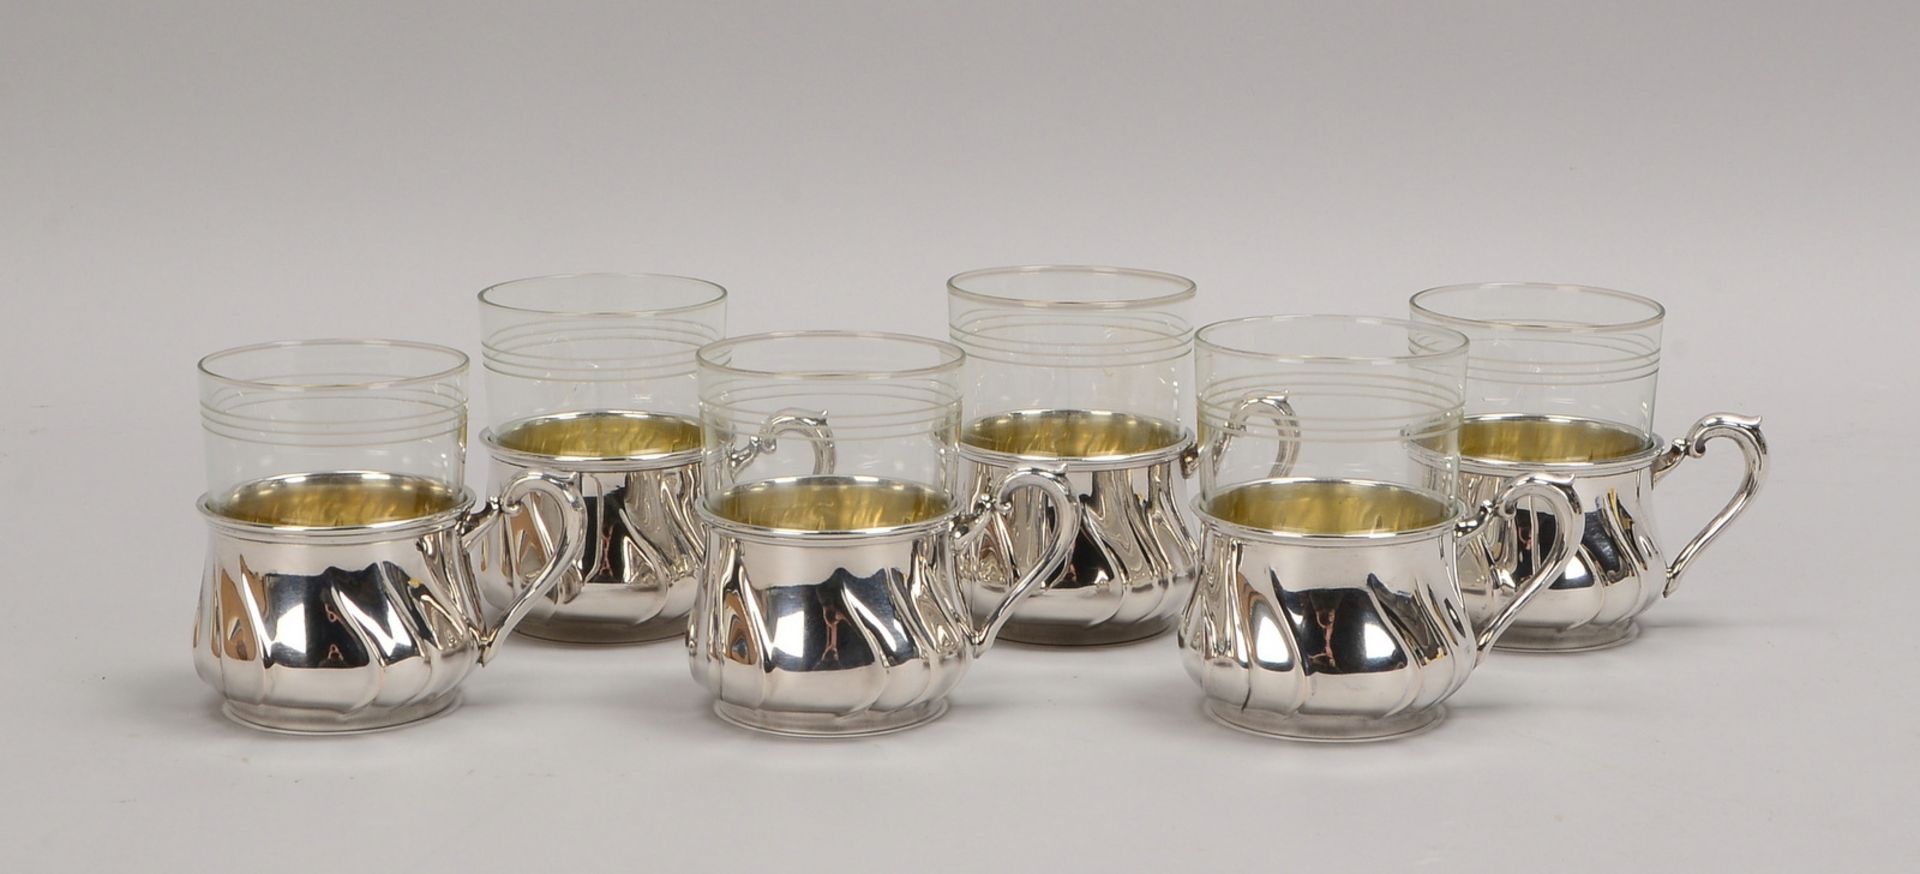 6 Teegläser, Jenaer Glas, 925 Sterlingsilber-Montierung, 6 Stück; Gew. Silber: 442 g